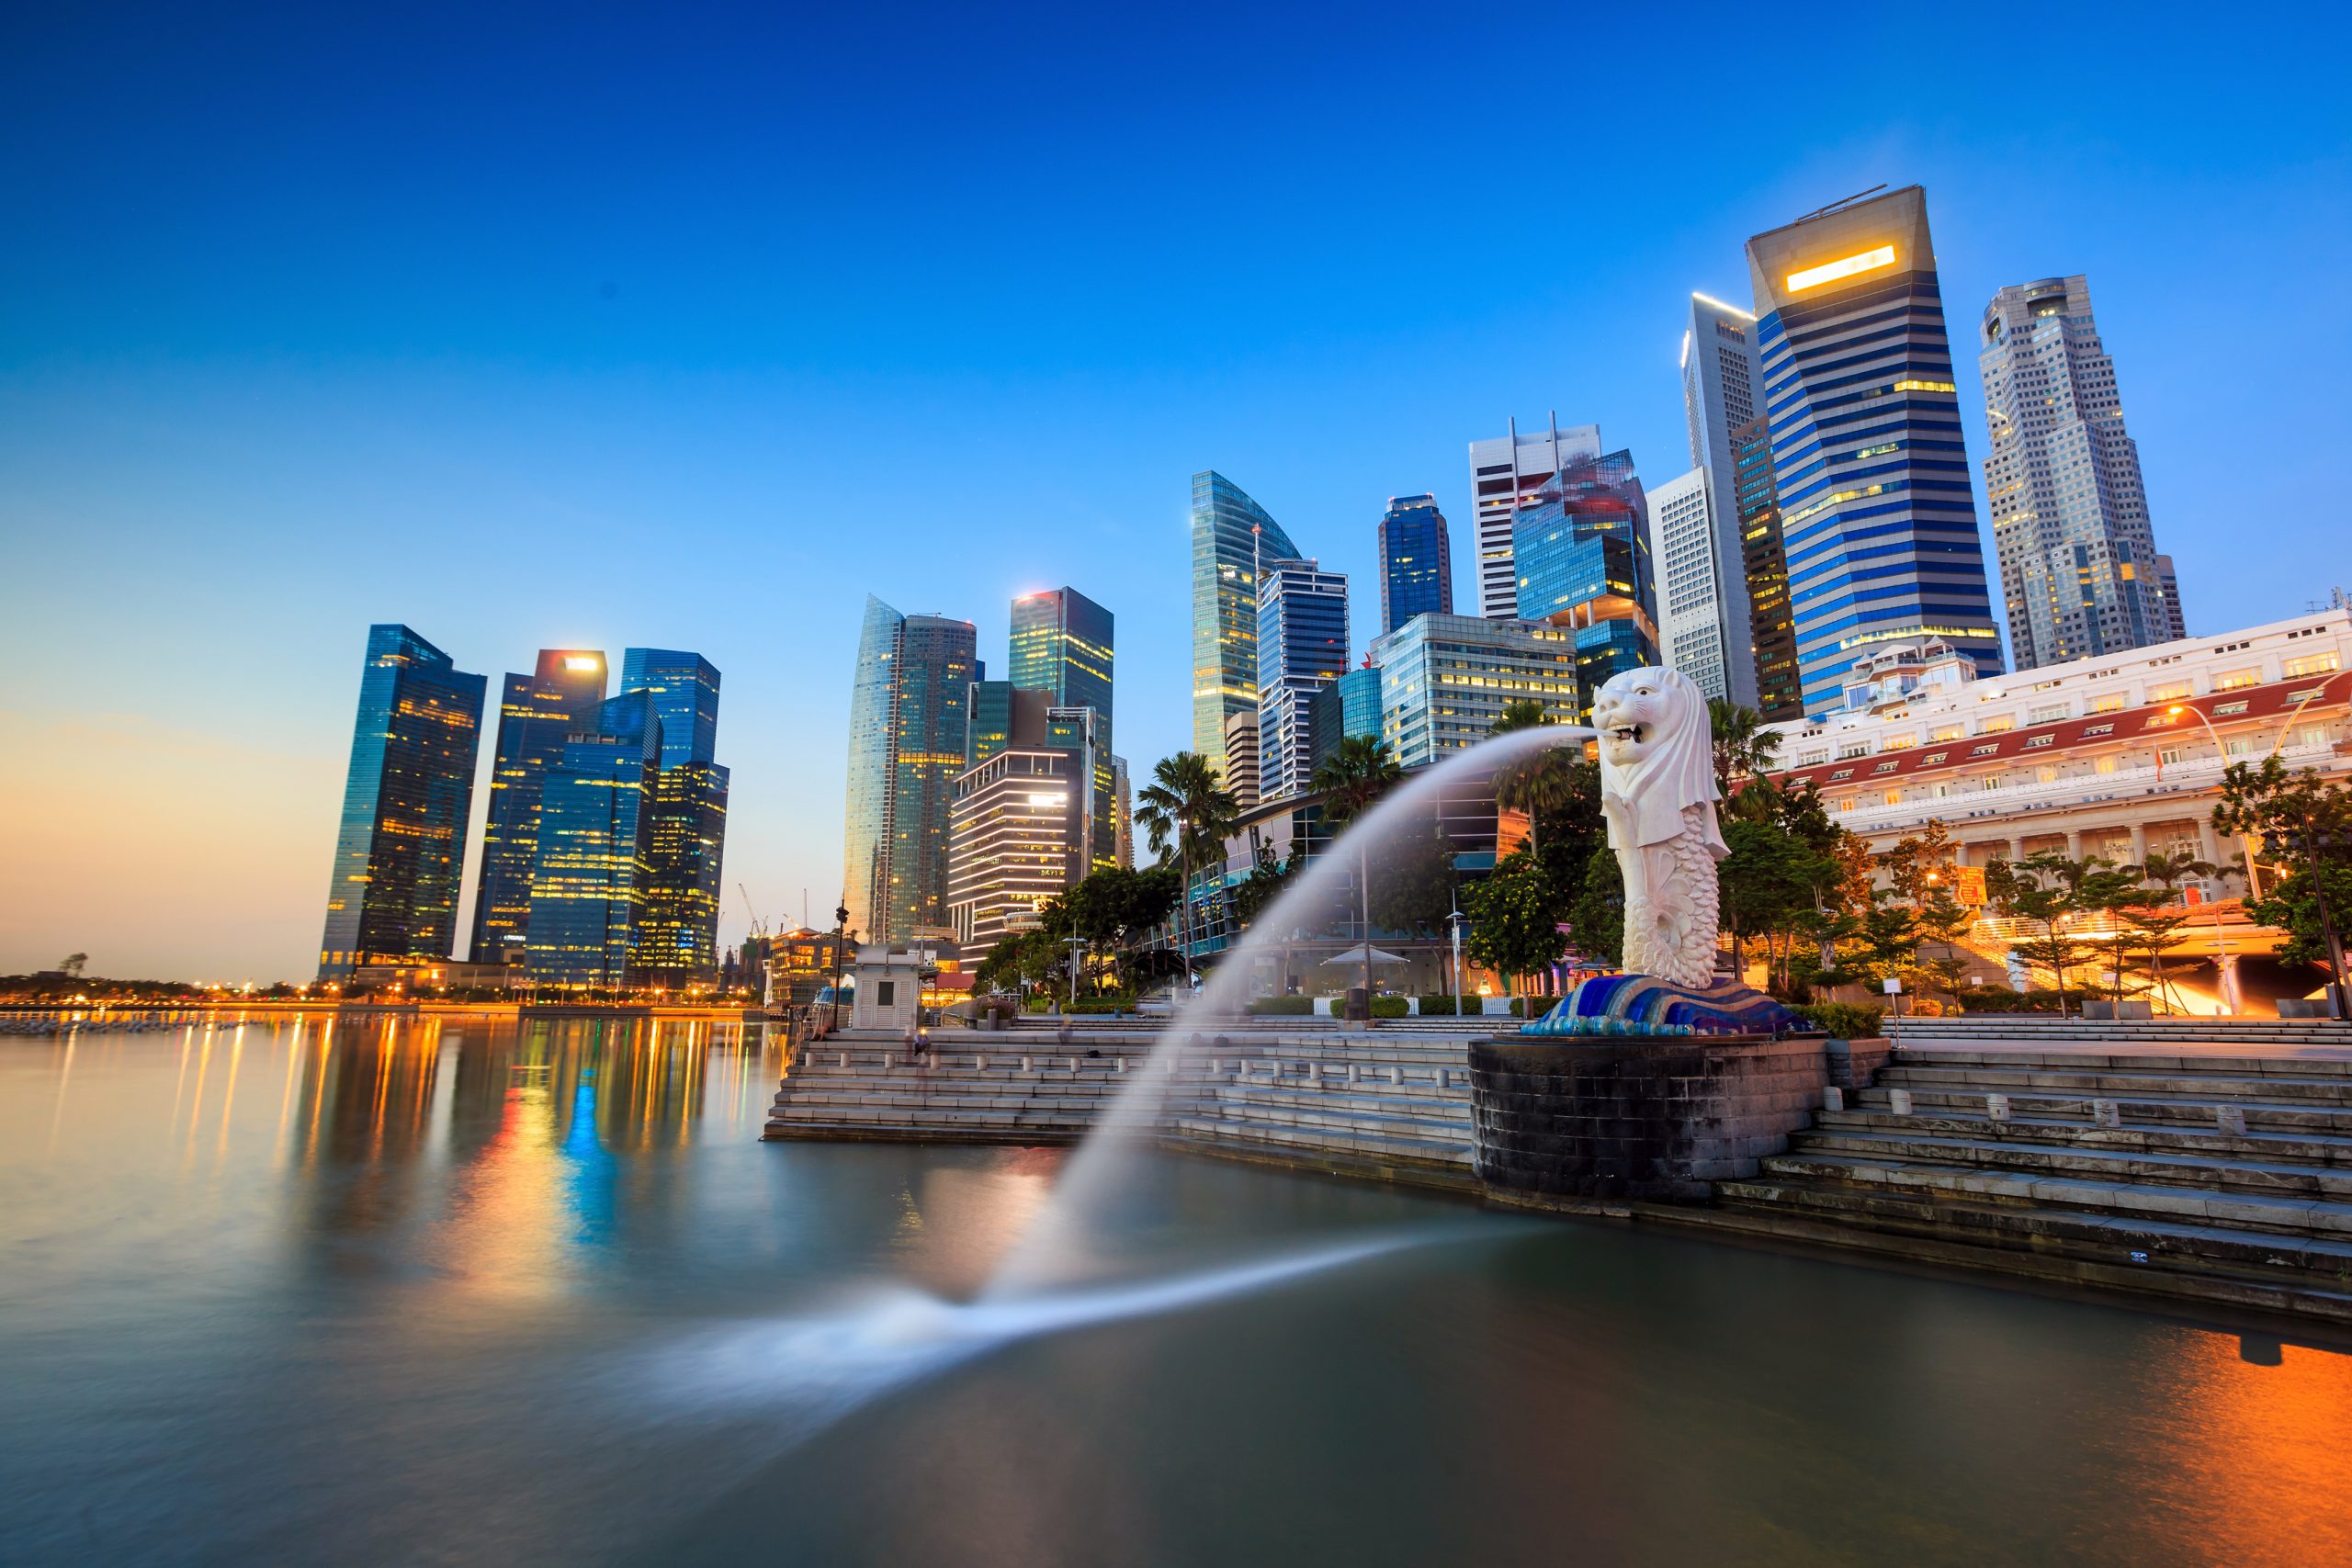 Singapore_Merlion-scaled-1.jpg